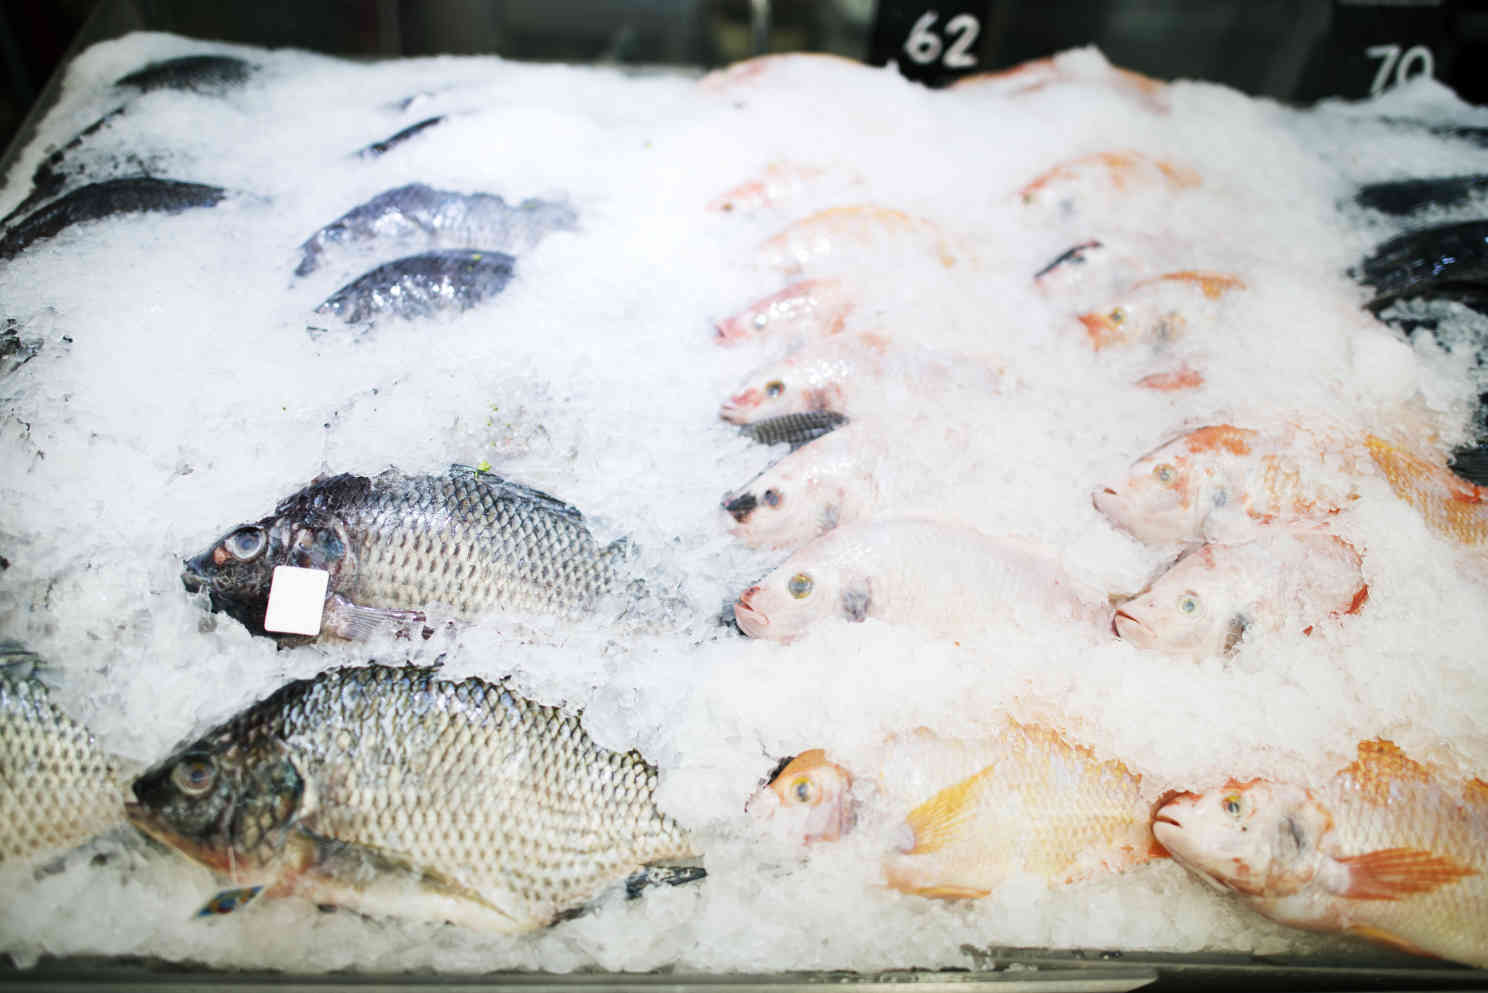 Eingefrorenen Fisch auftauen - das musst du beachten